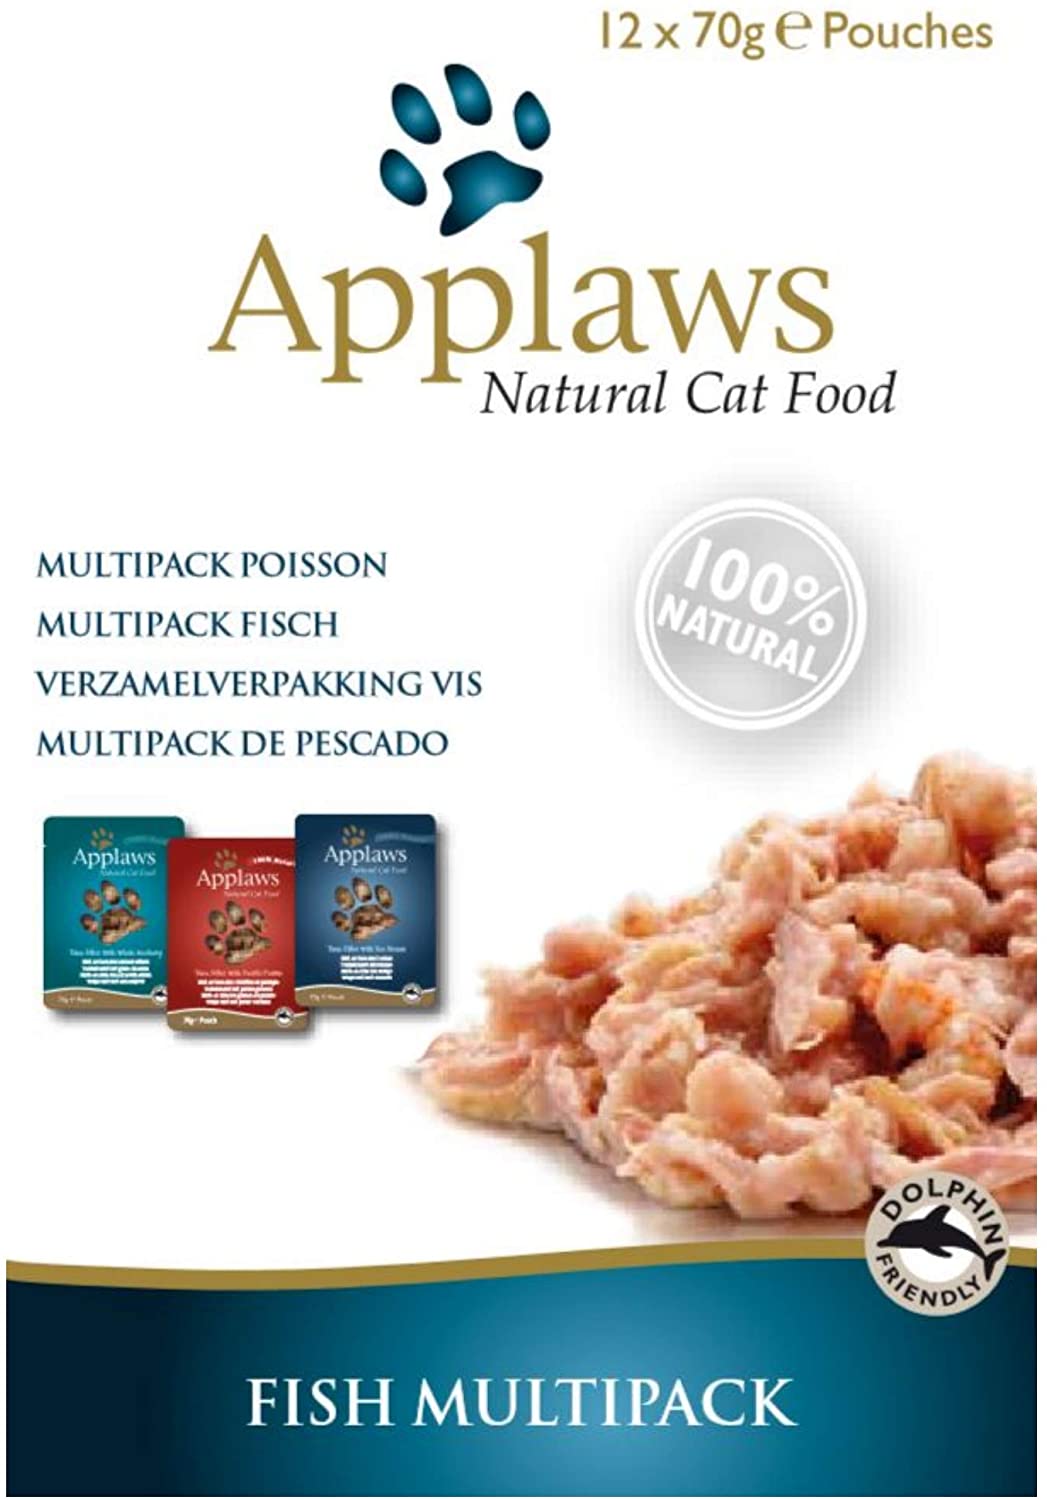  Applaws - Bolsa de Alimentos para Gatos, Varios Paquetes 